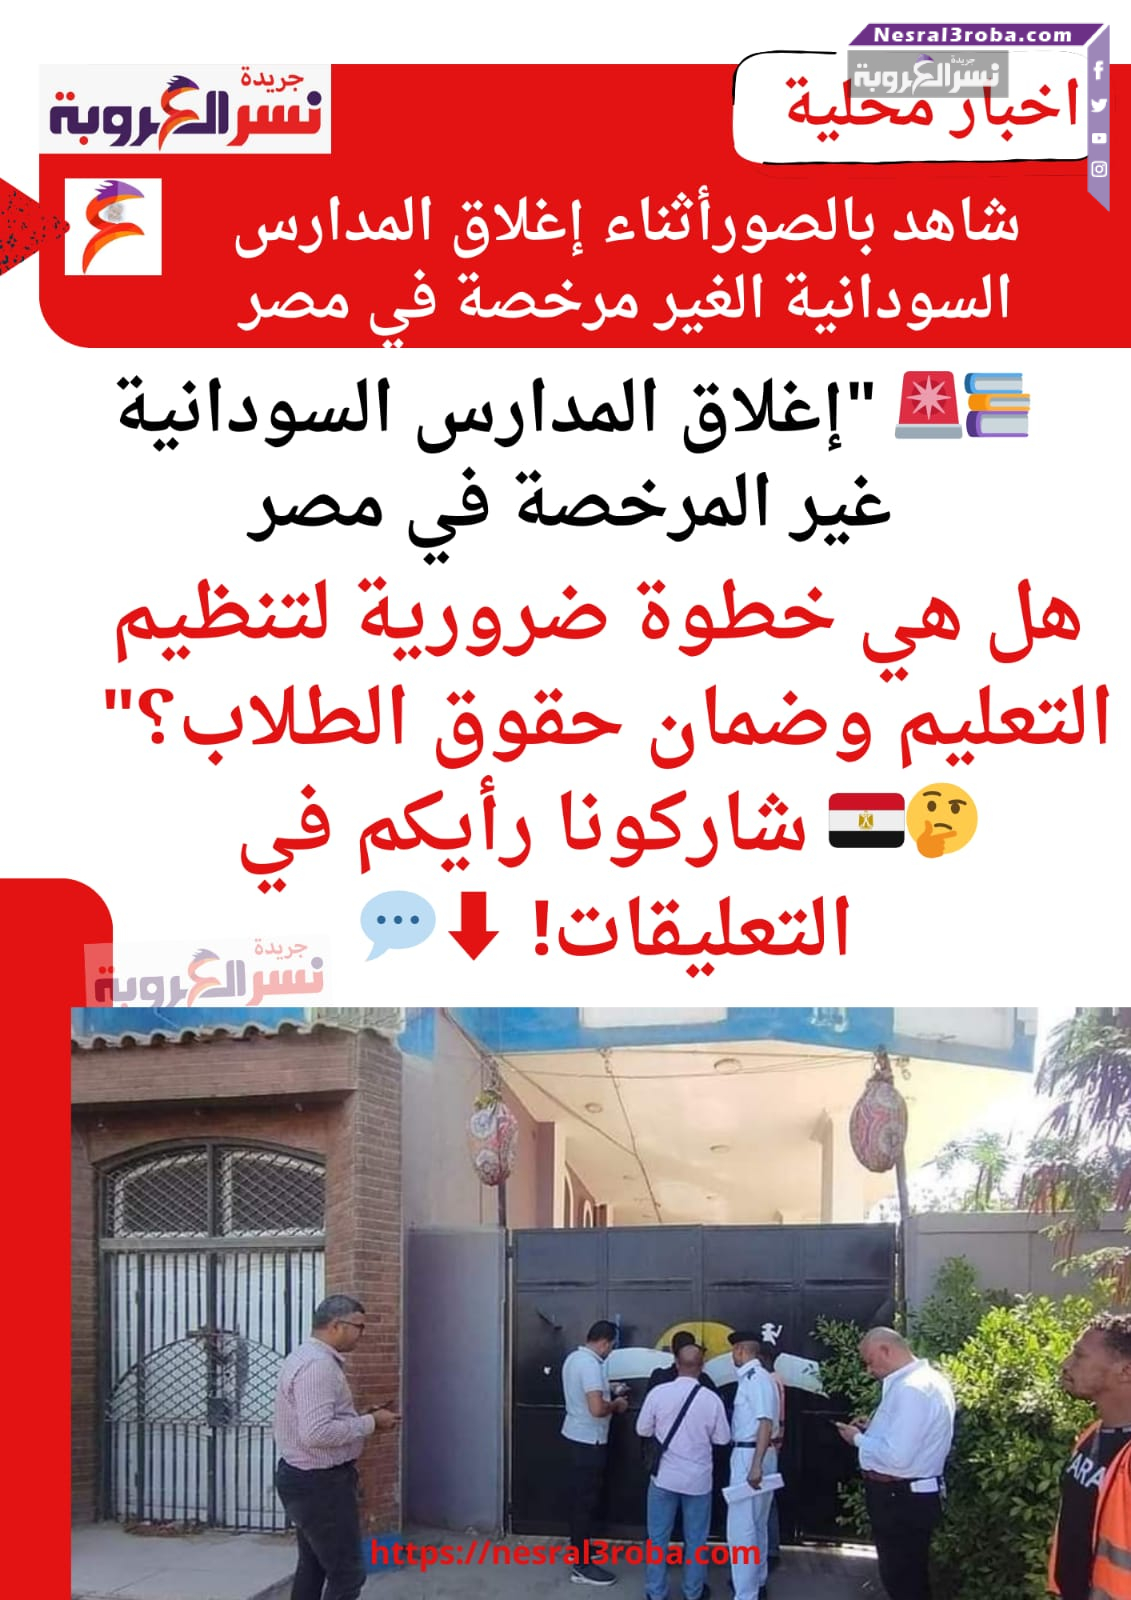 إغلاق المدارس السودانية غير المرخصة في مصر: هل هي خطوة ضرورية